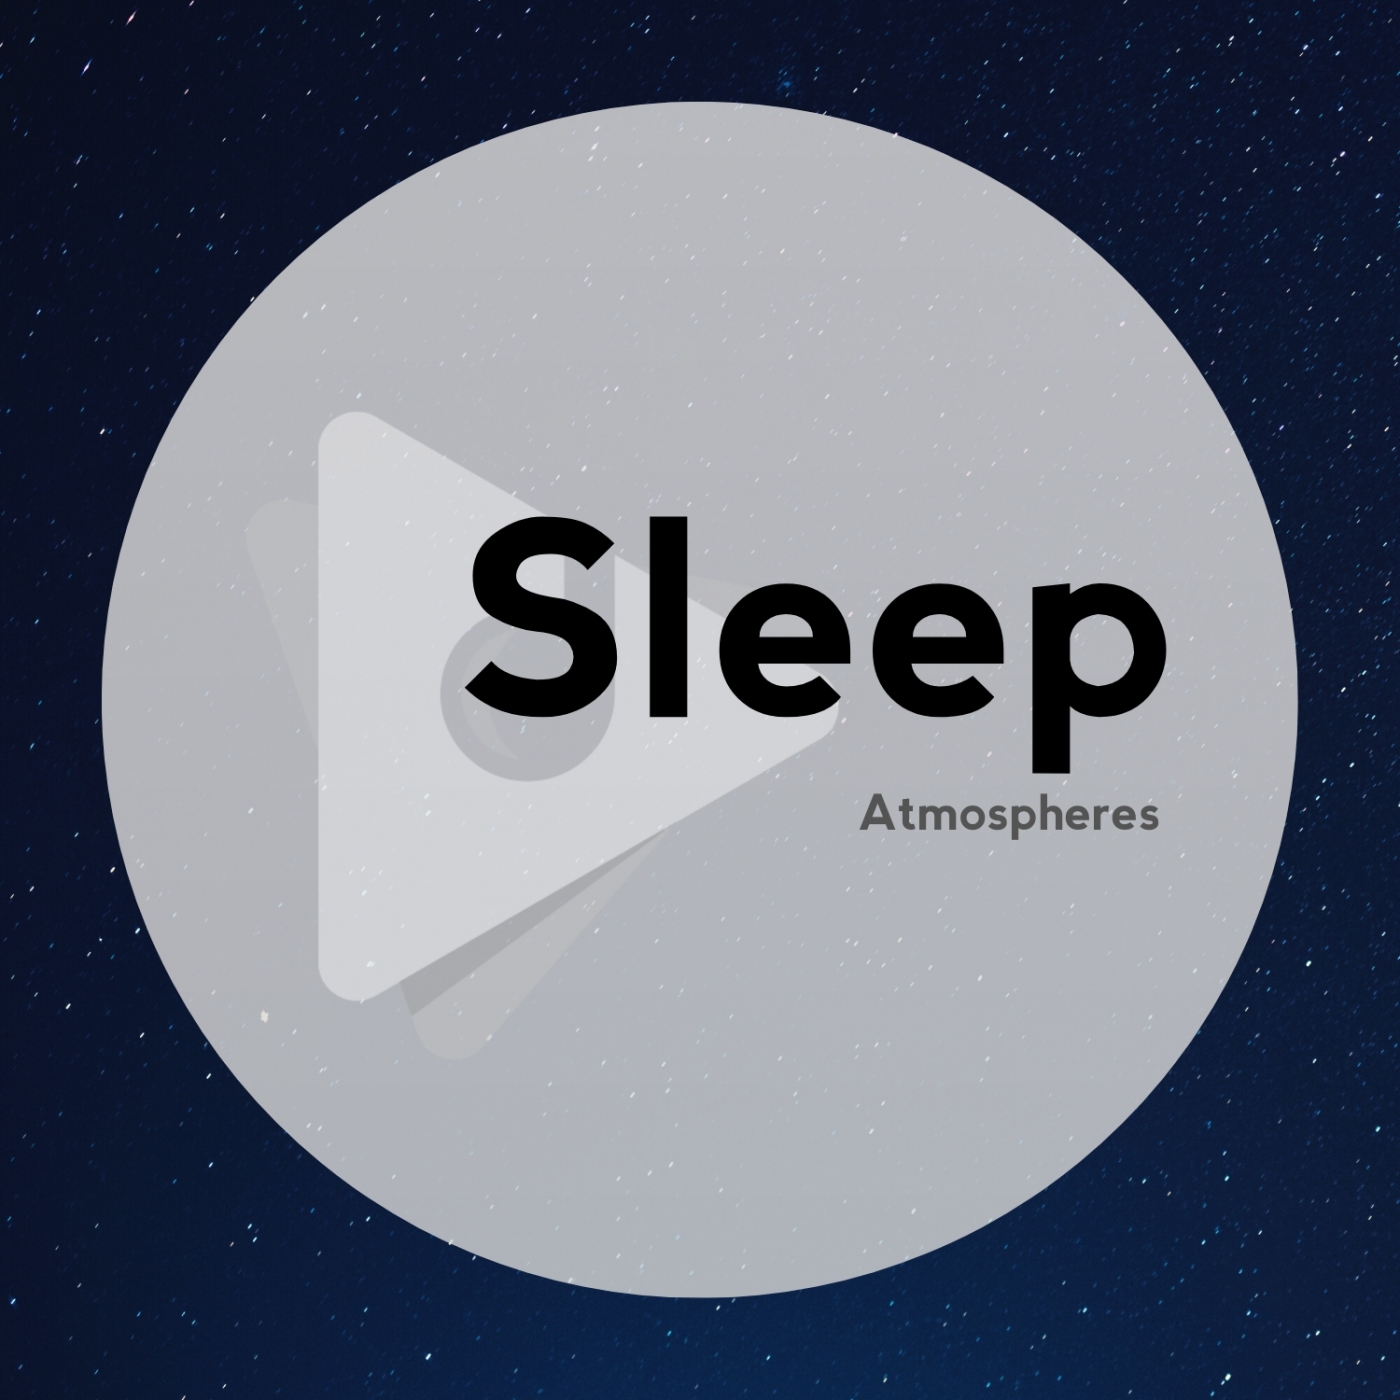 Sleep Atmospheres